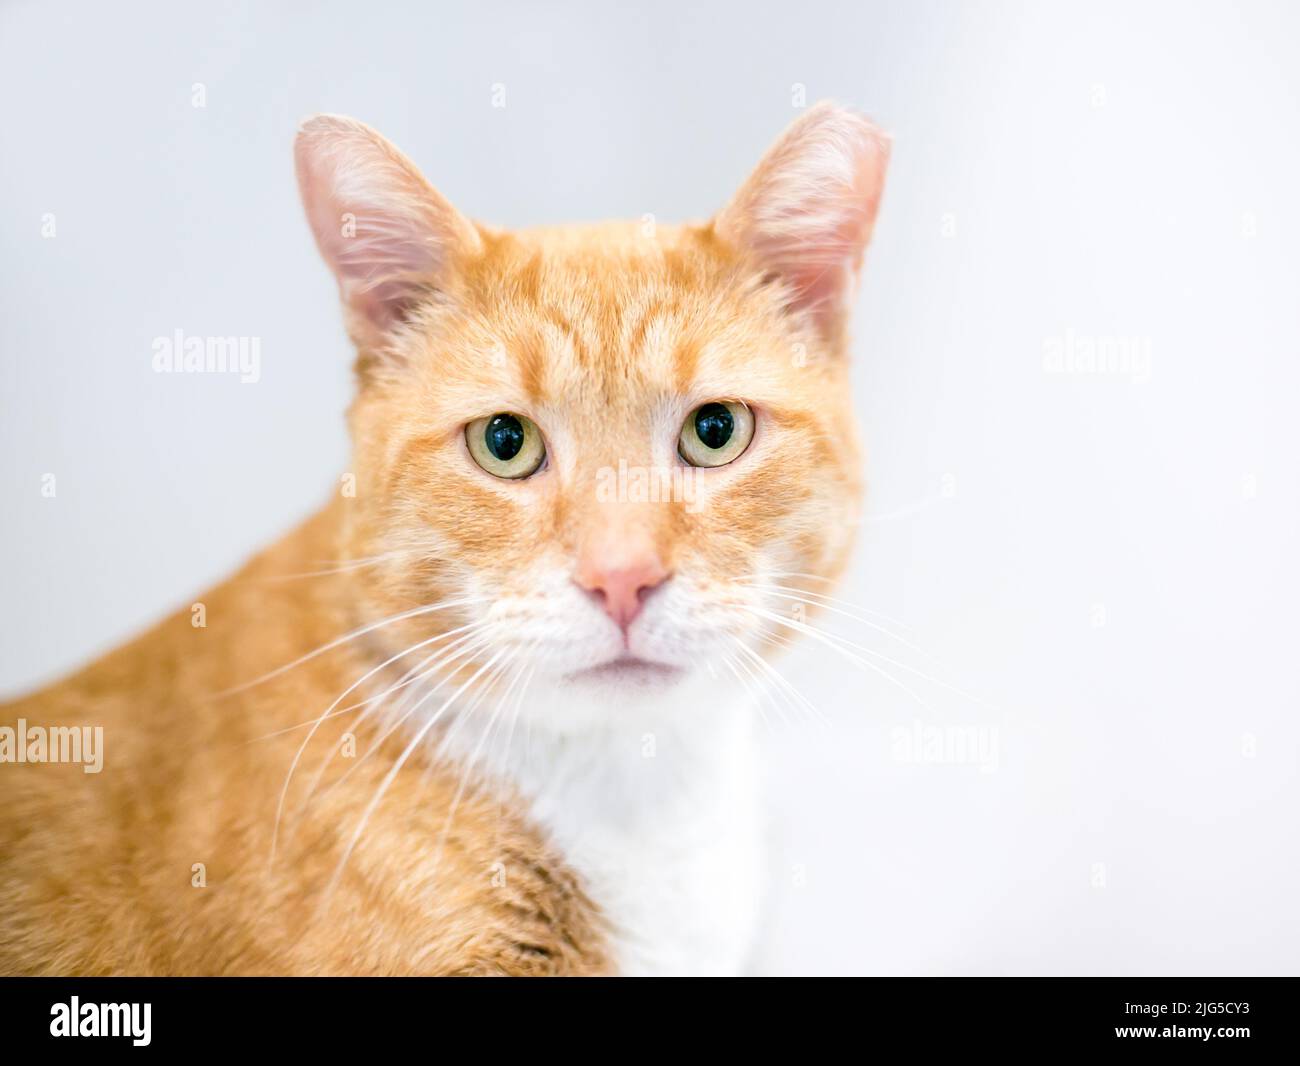 Un gato anaranjado tabby shorthair con su oído izquierdo inclinado, indicando que ha sido esterilizado o castrado y vacunado como parte de un retorno de neutralización de trampa Foto de stock